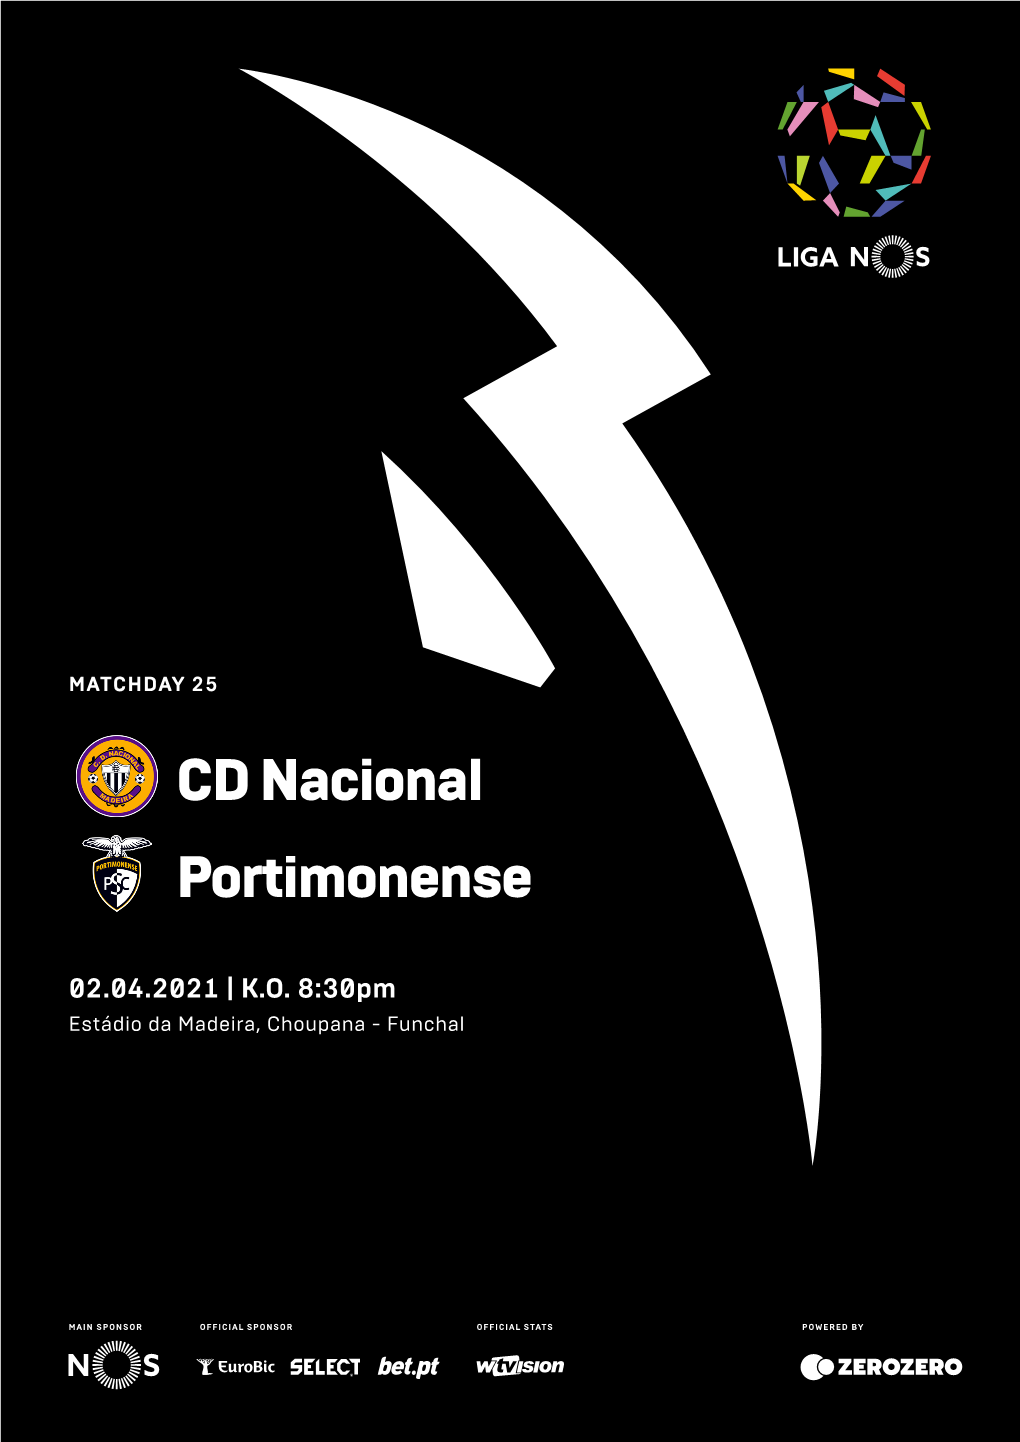 CD Nacional Portimonense